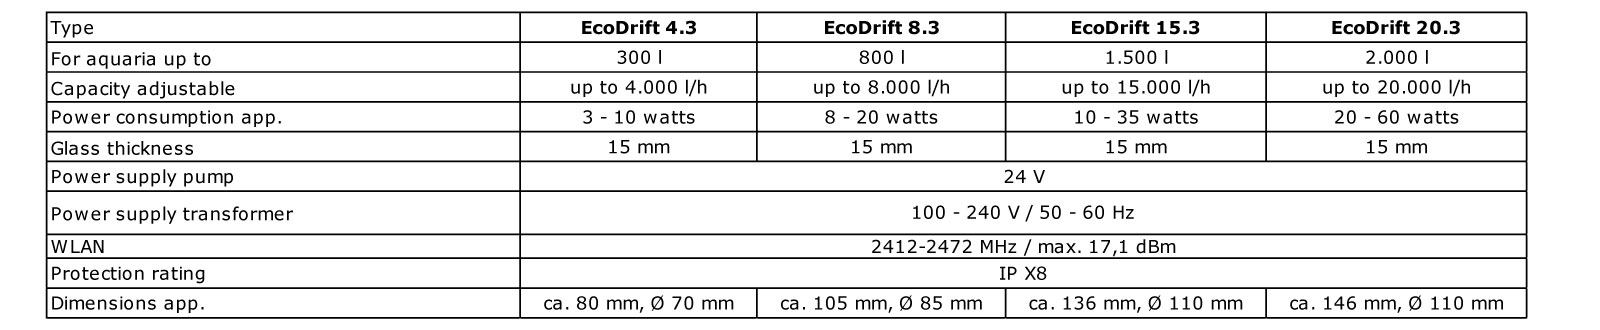 Aqua Medic Controller EcoDrift 15.3 28